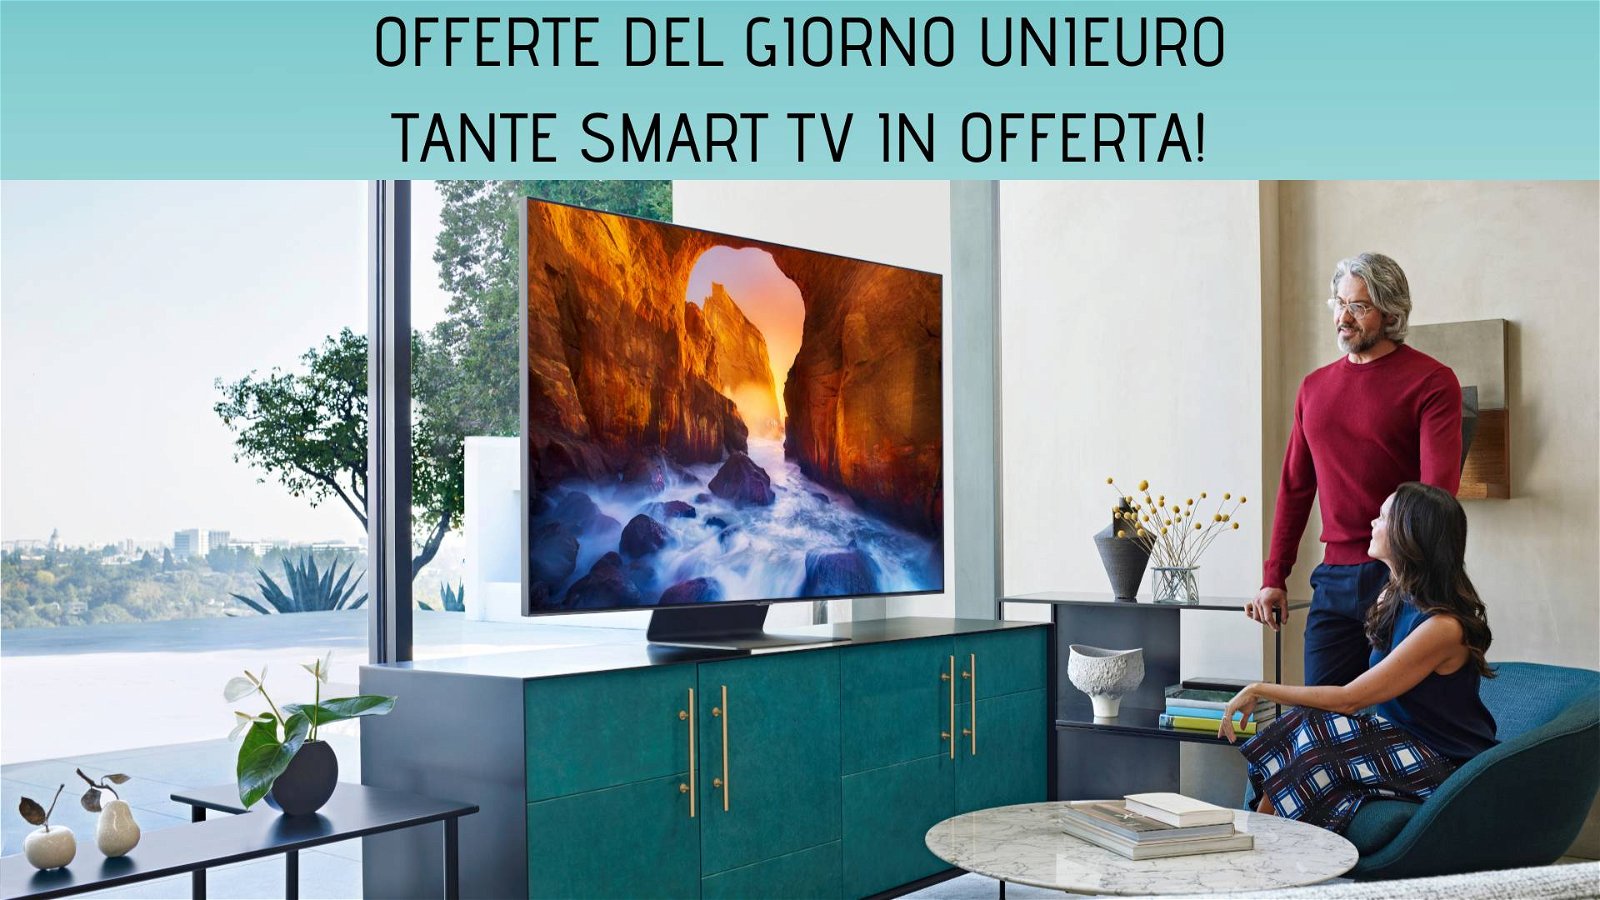 Immagine di Offerte del giorno Unieuro: tante smart TV con sconti fino al 50%!